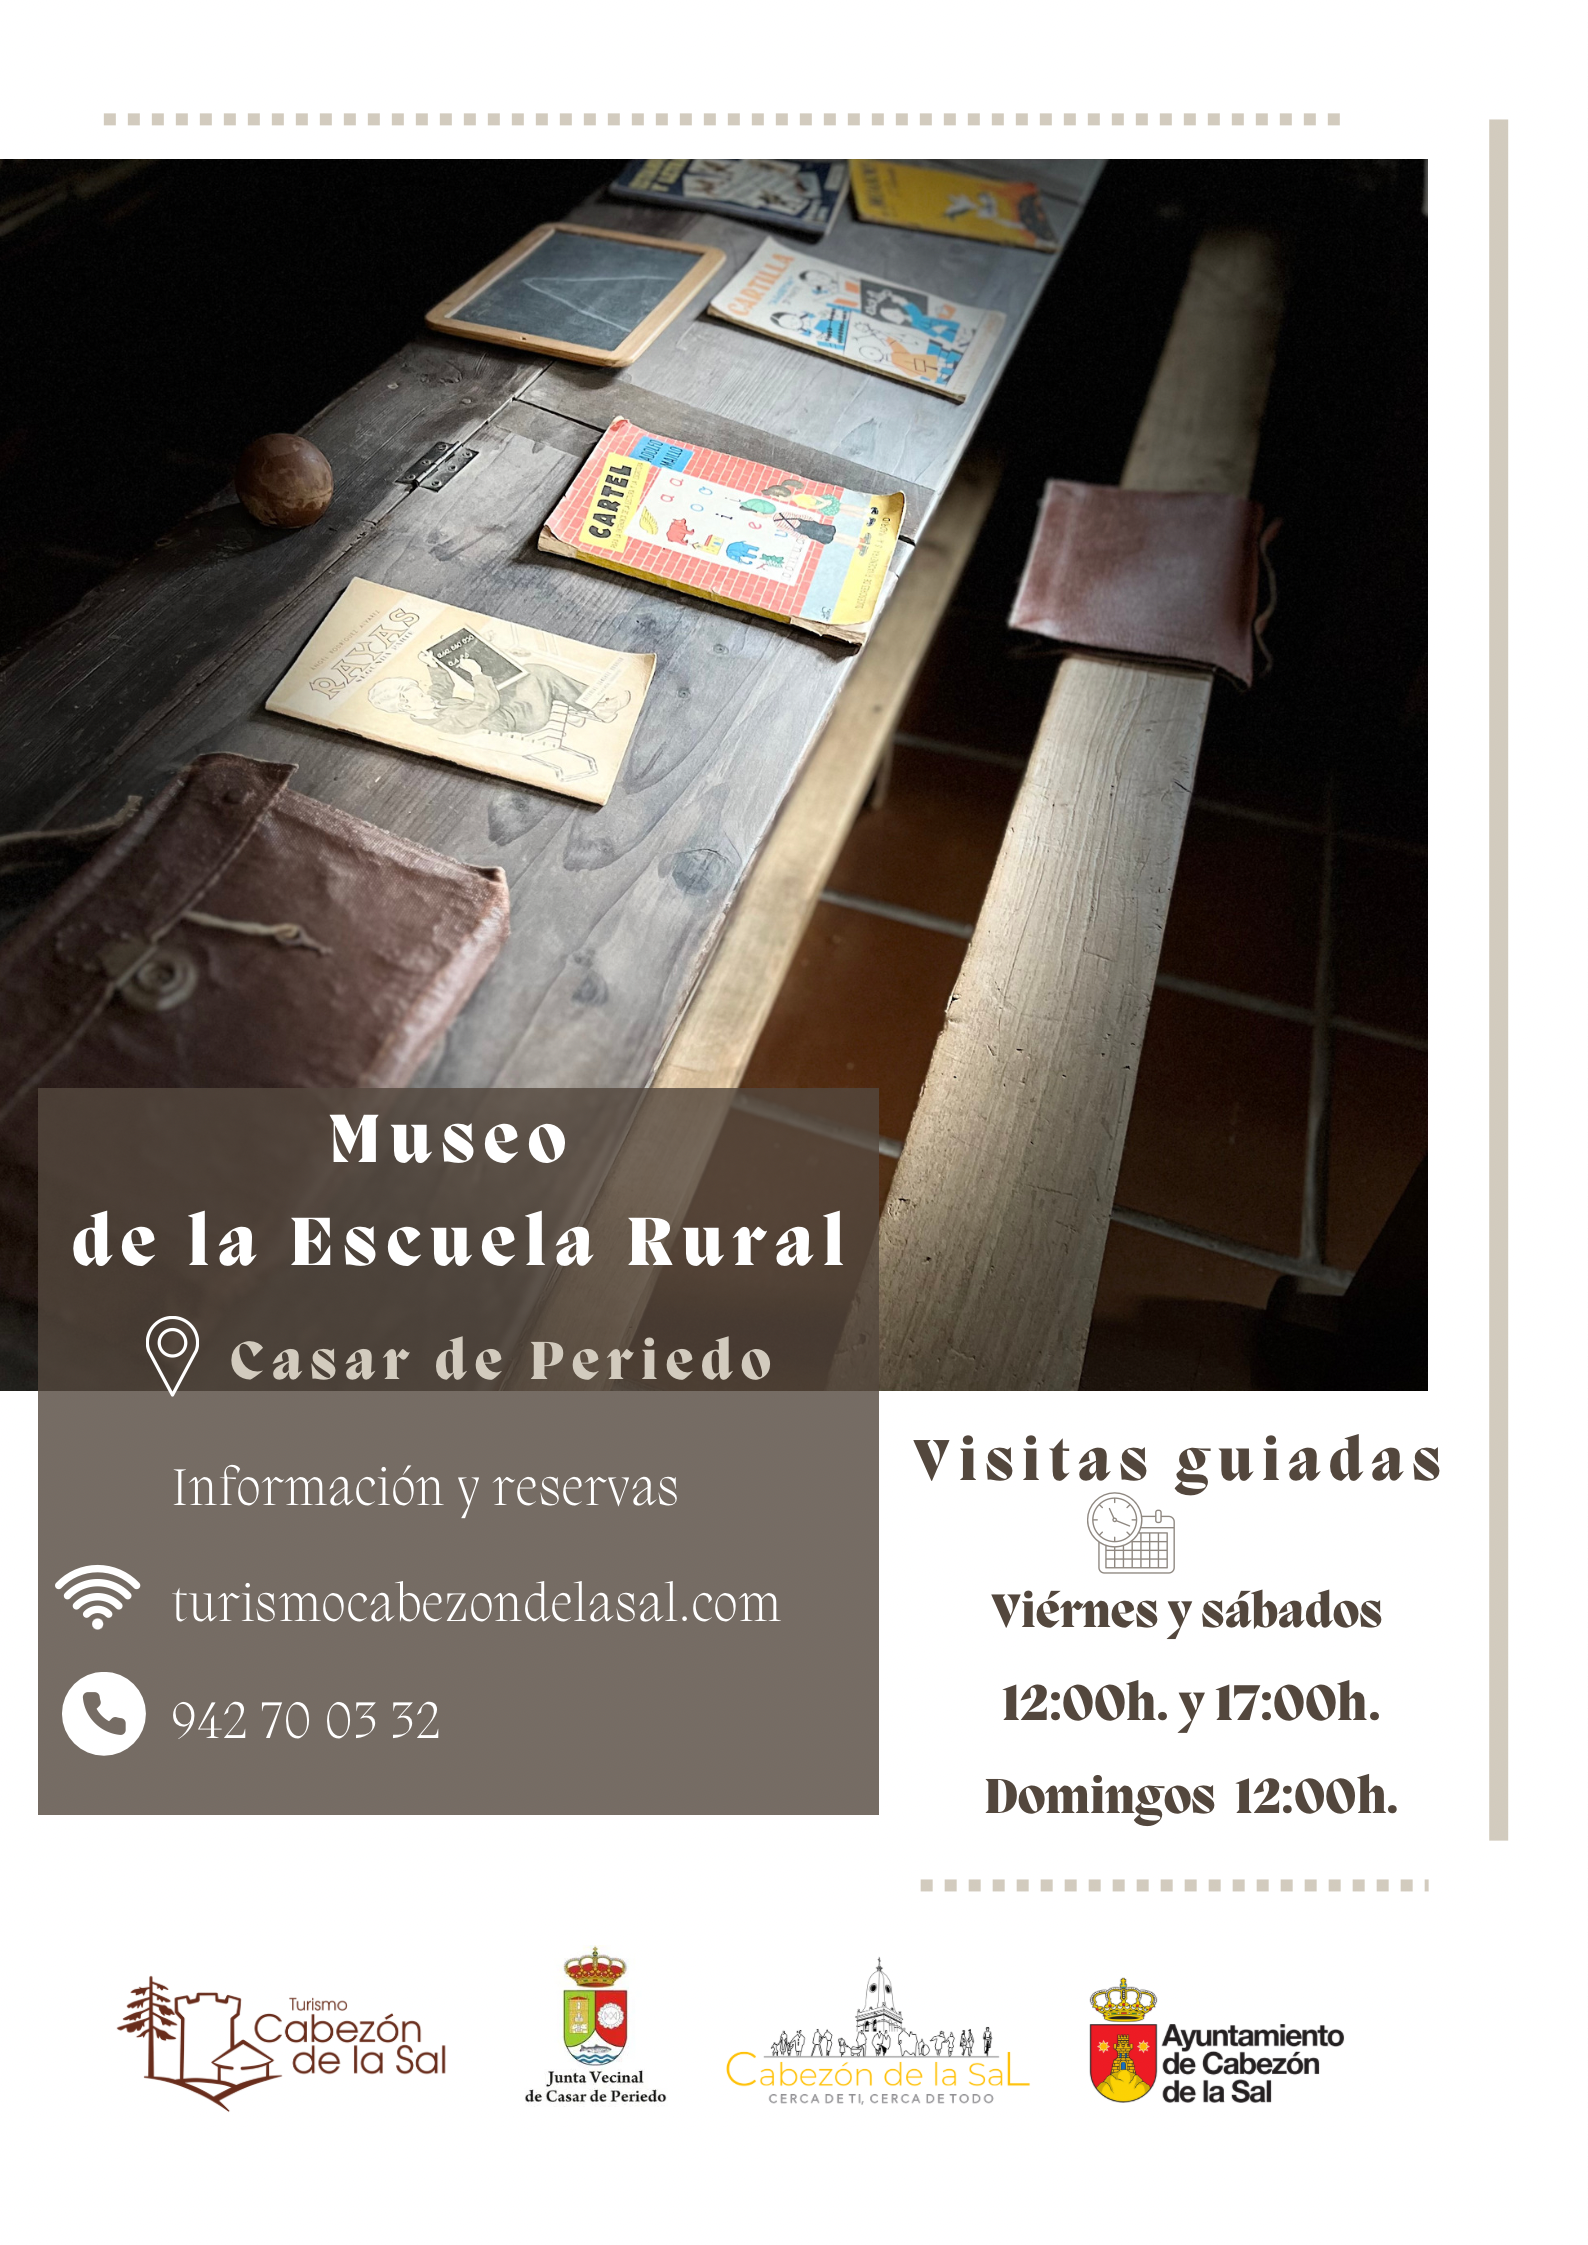 MUSEO DE LA ESCUELA RURAL EN CASAR DE PERIEDO